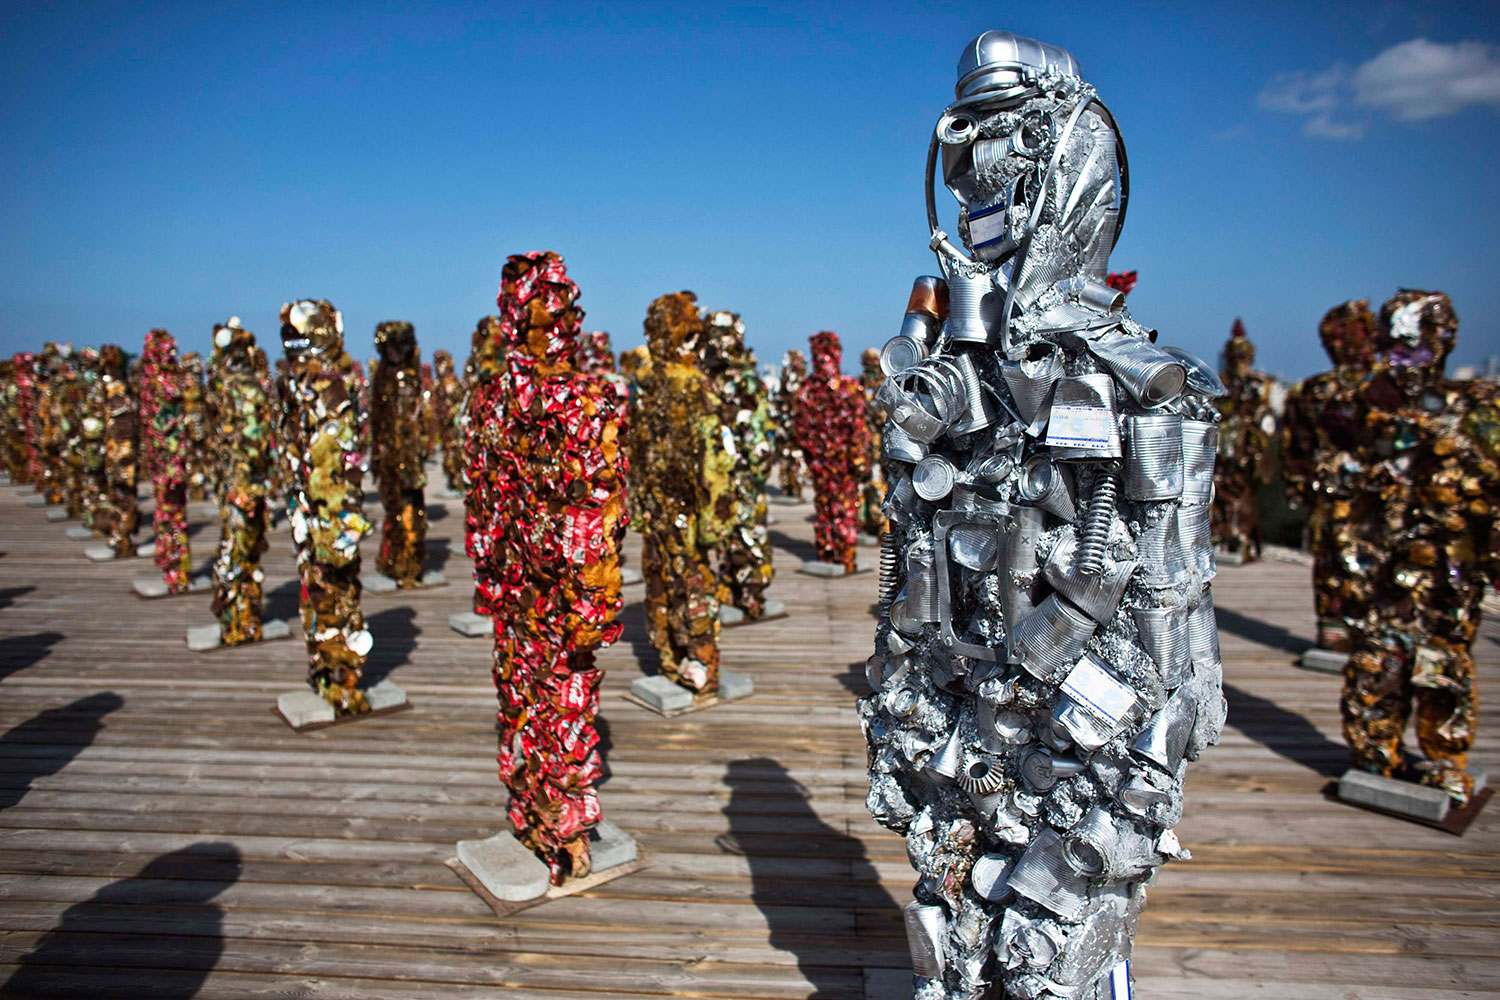 Tel Aviv recibe "Trash People", figuras realizadas con 20 toneladas de material reciclado